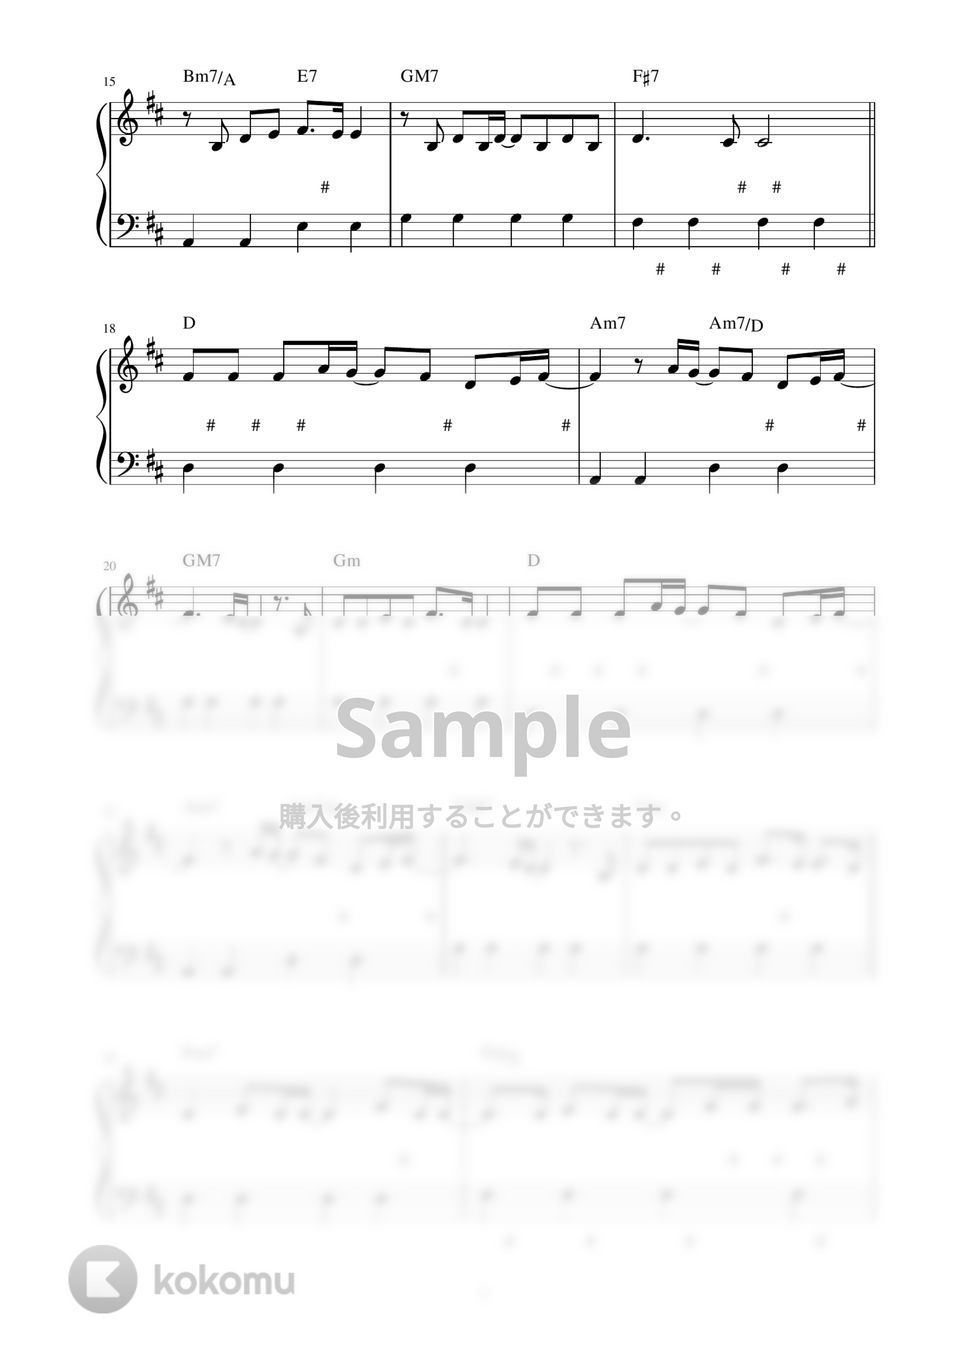 DISH// - 五明後日 (ピアノ楽譜 / かんたん両手 / 歌詞付き / ドレミ付き / 初心者向き) by piano.tokyo